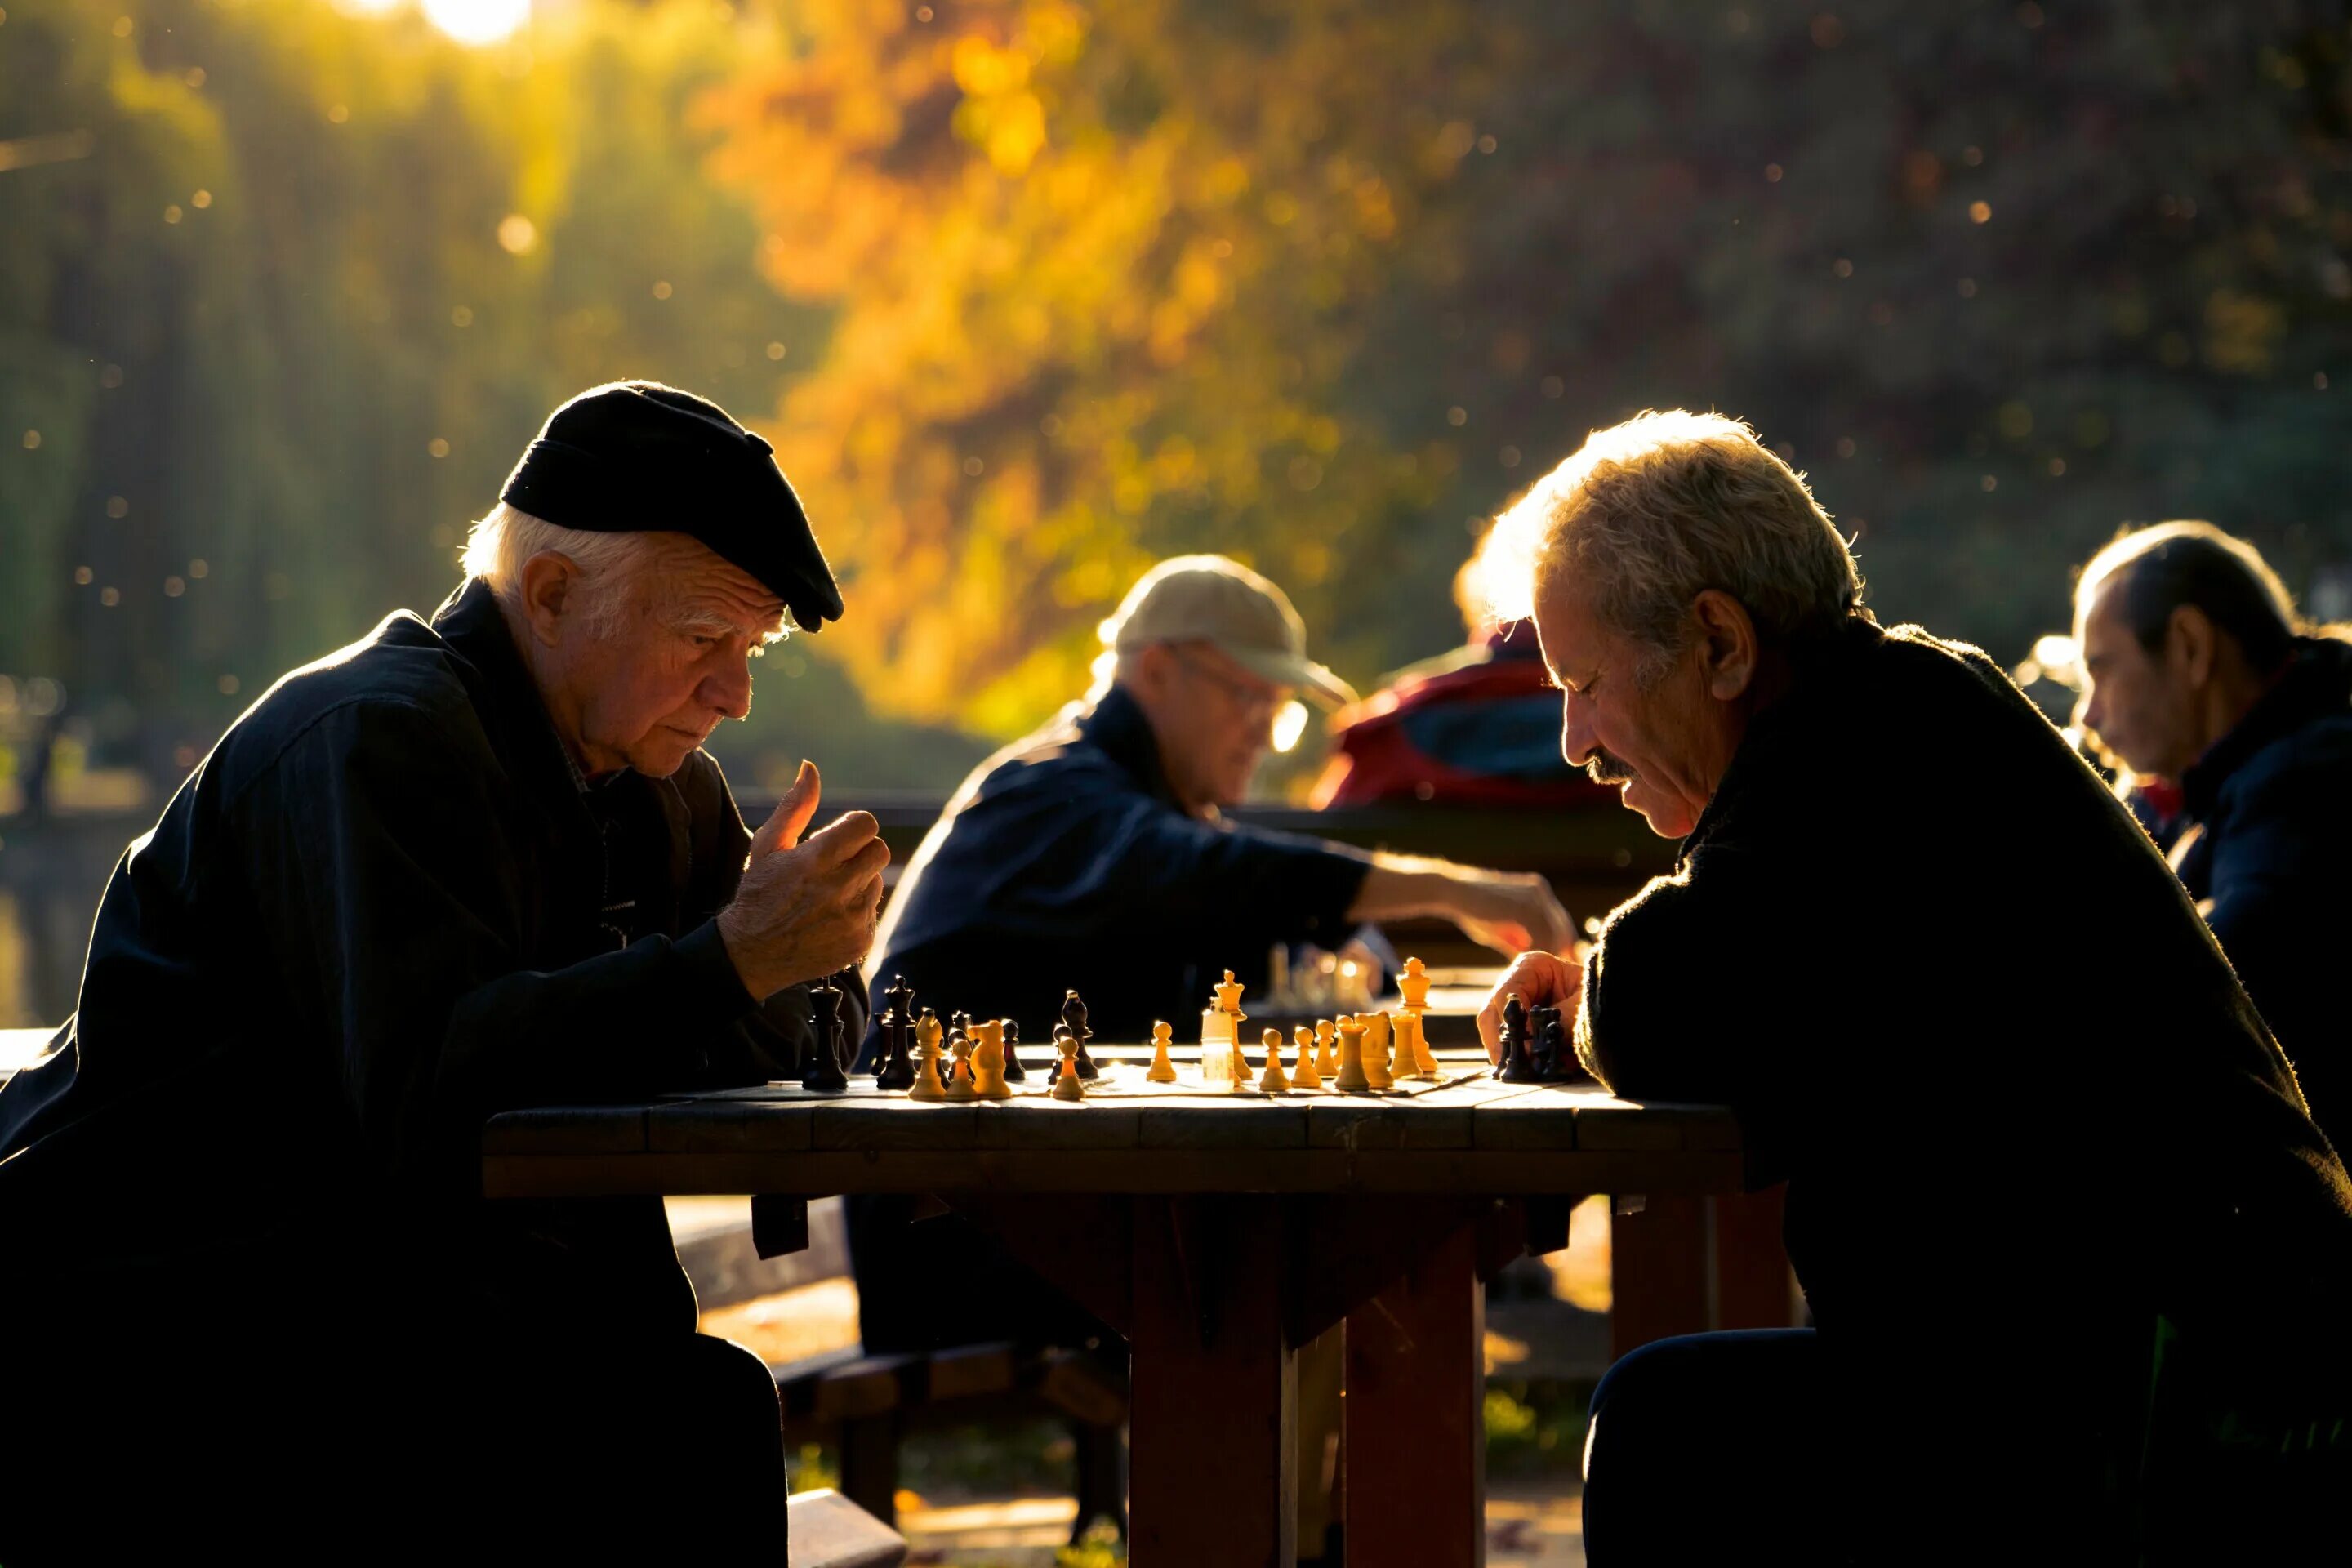 Старики играют в шахматы. Шахматы пенсионеры. Пенсионеры играют в шахматы. Игра в шахматы пожилых. Мужчины играют в шахматы